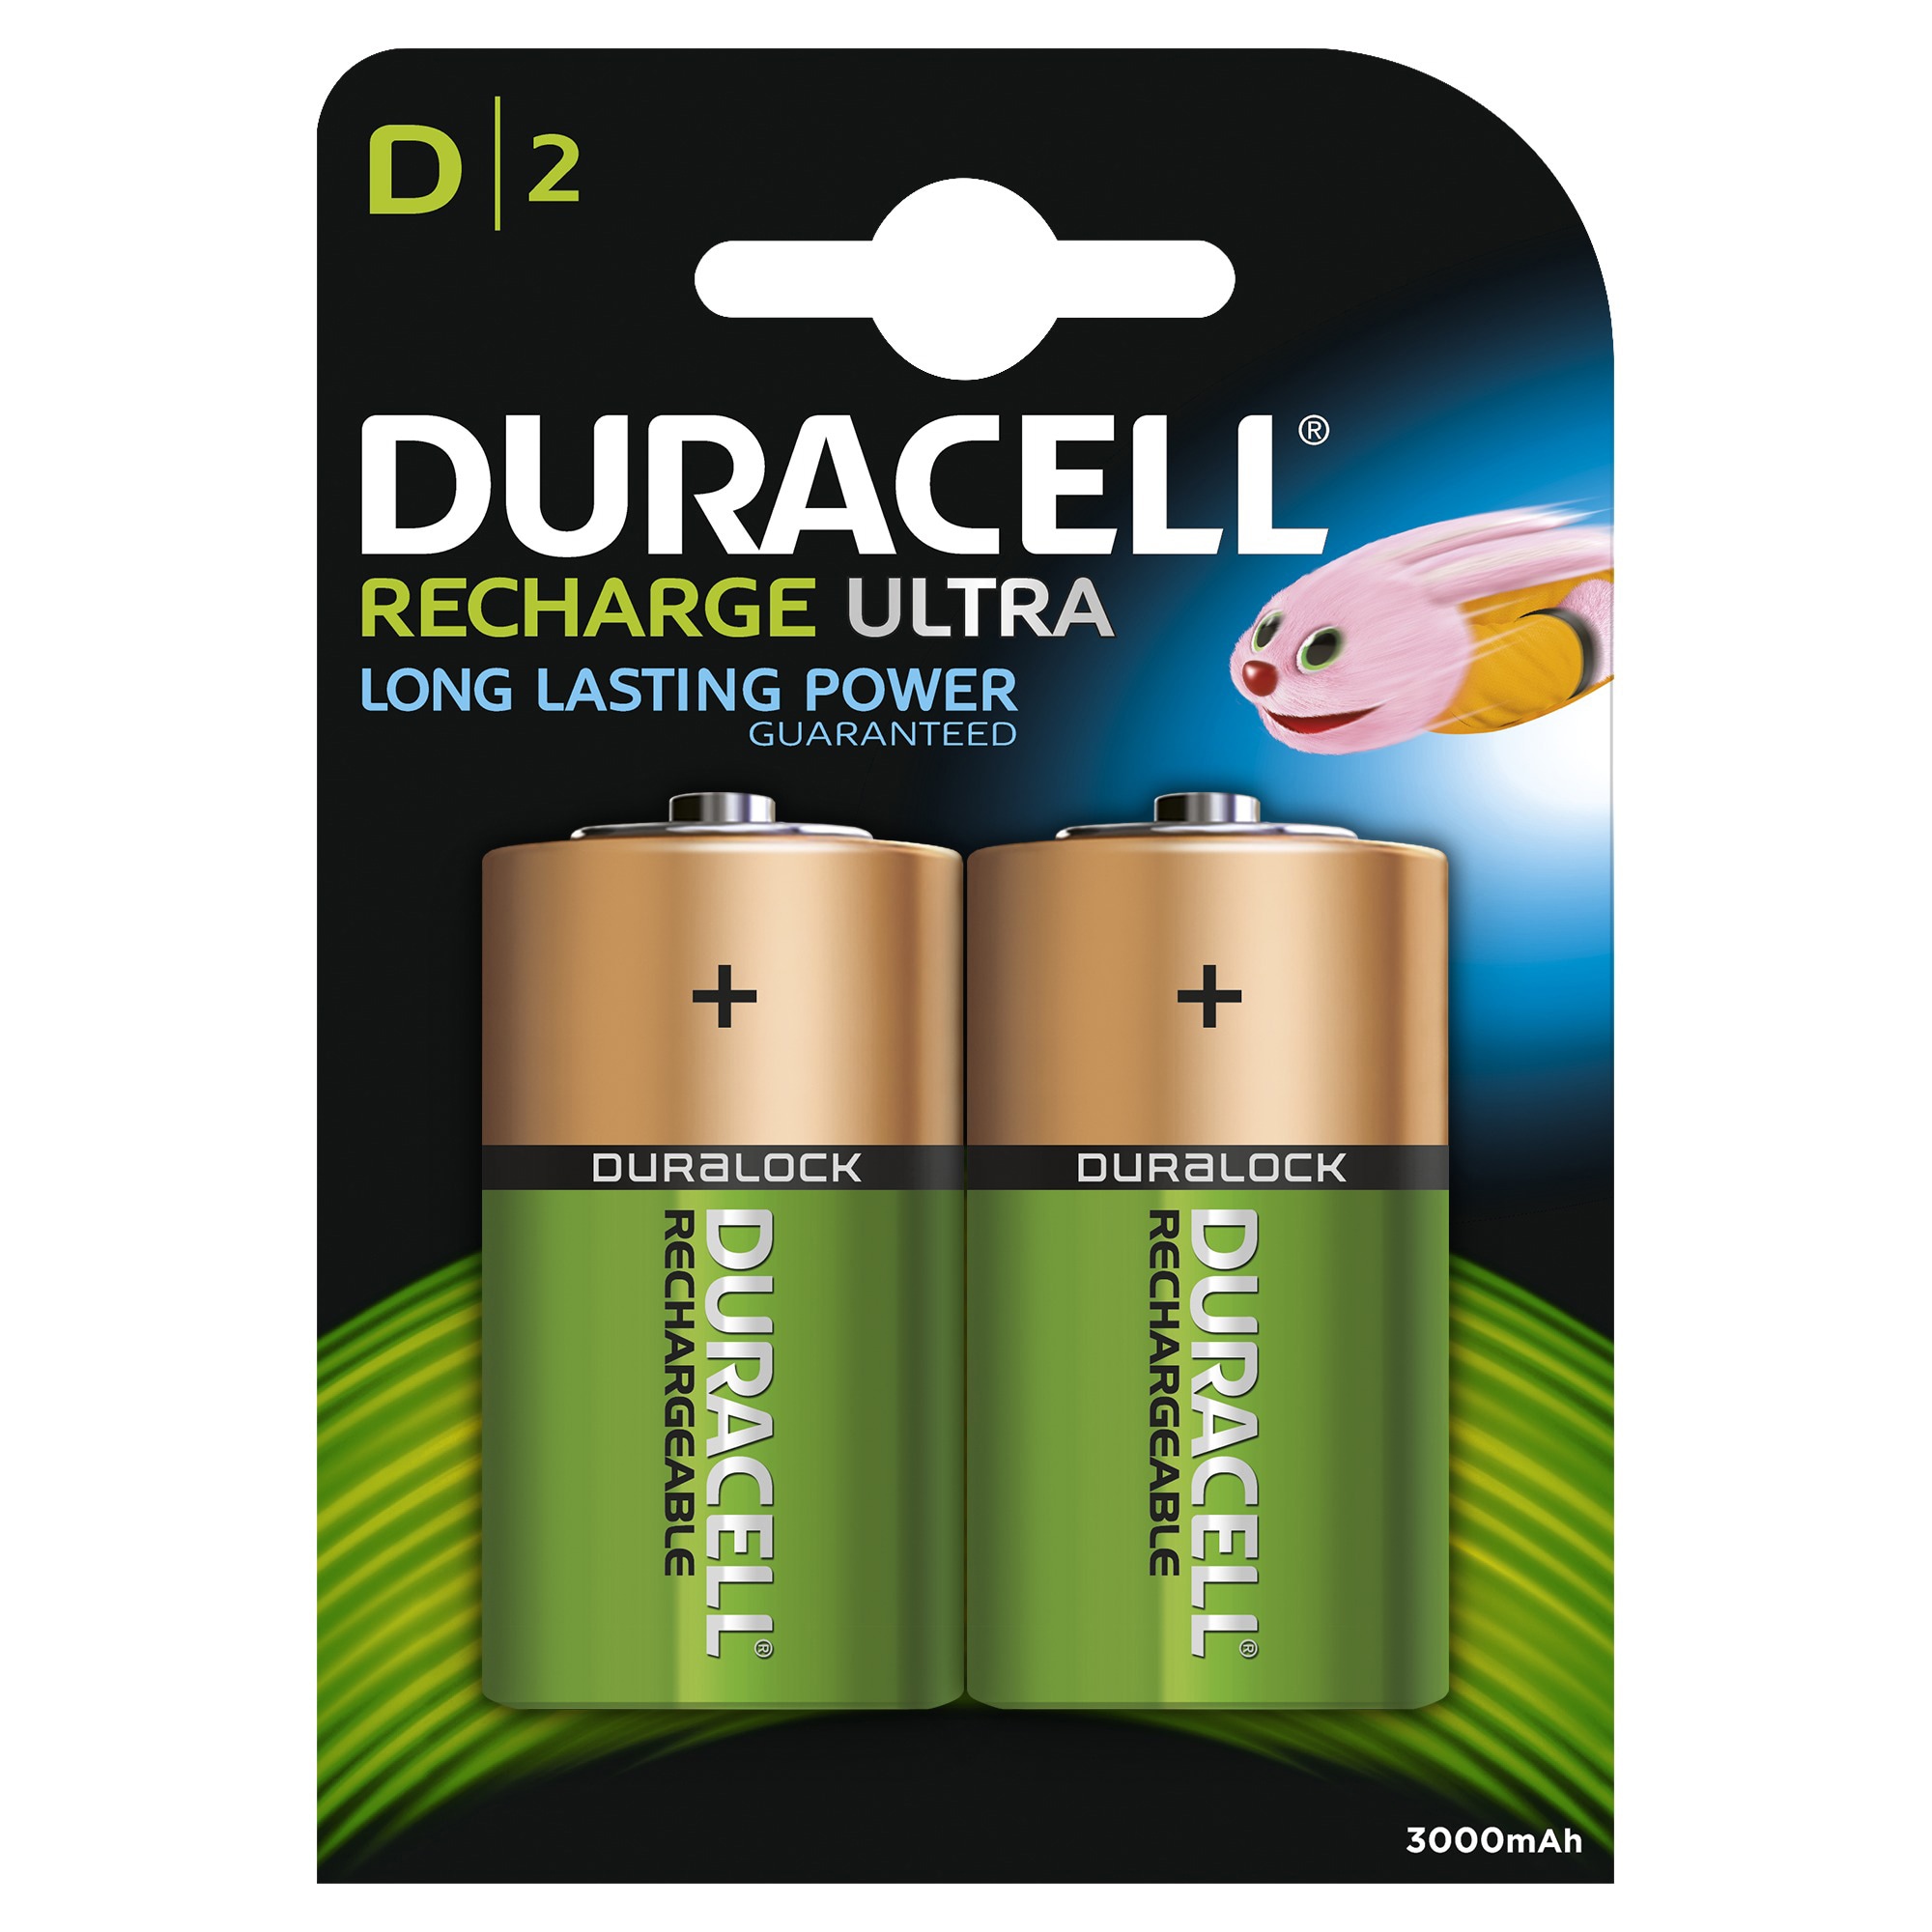 Duracell Recharge Plus D 3000mAh batterier - 2 stk